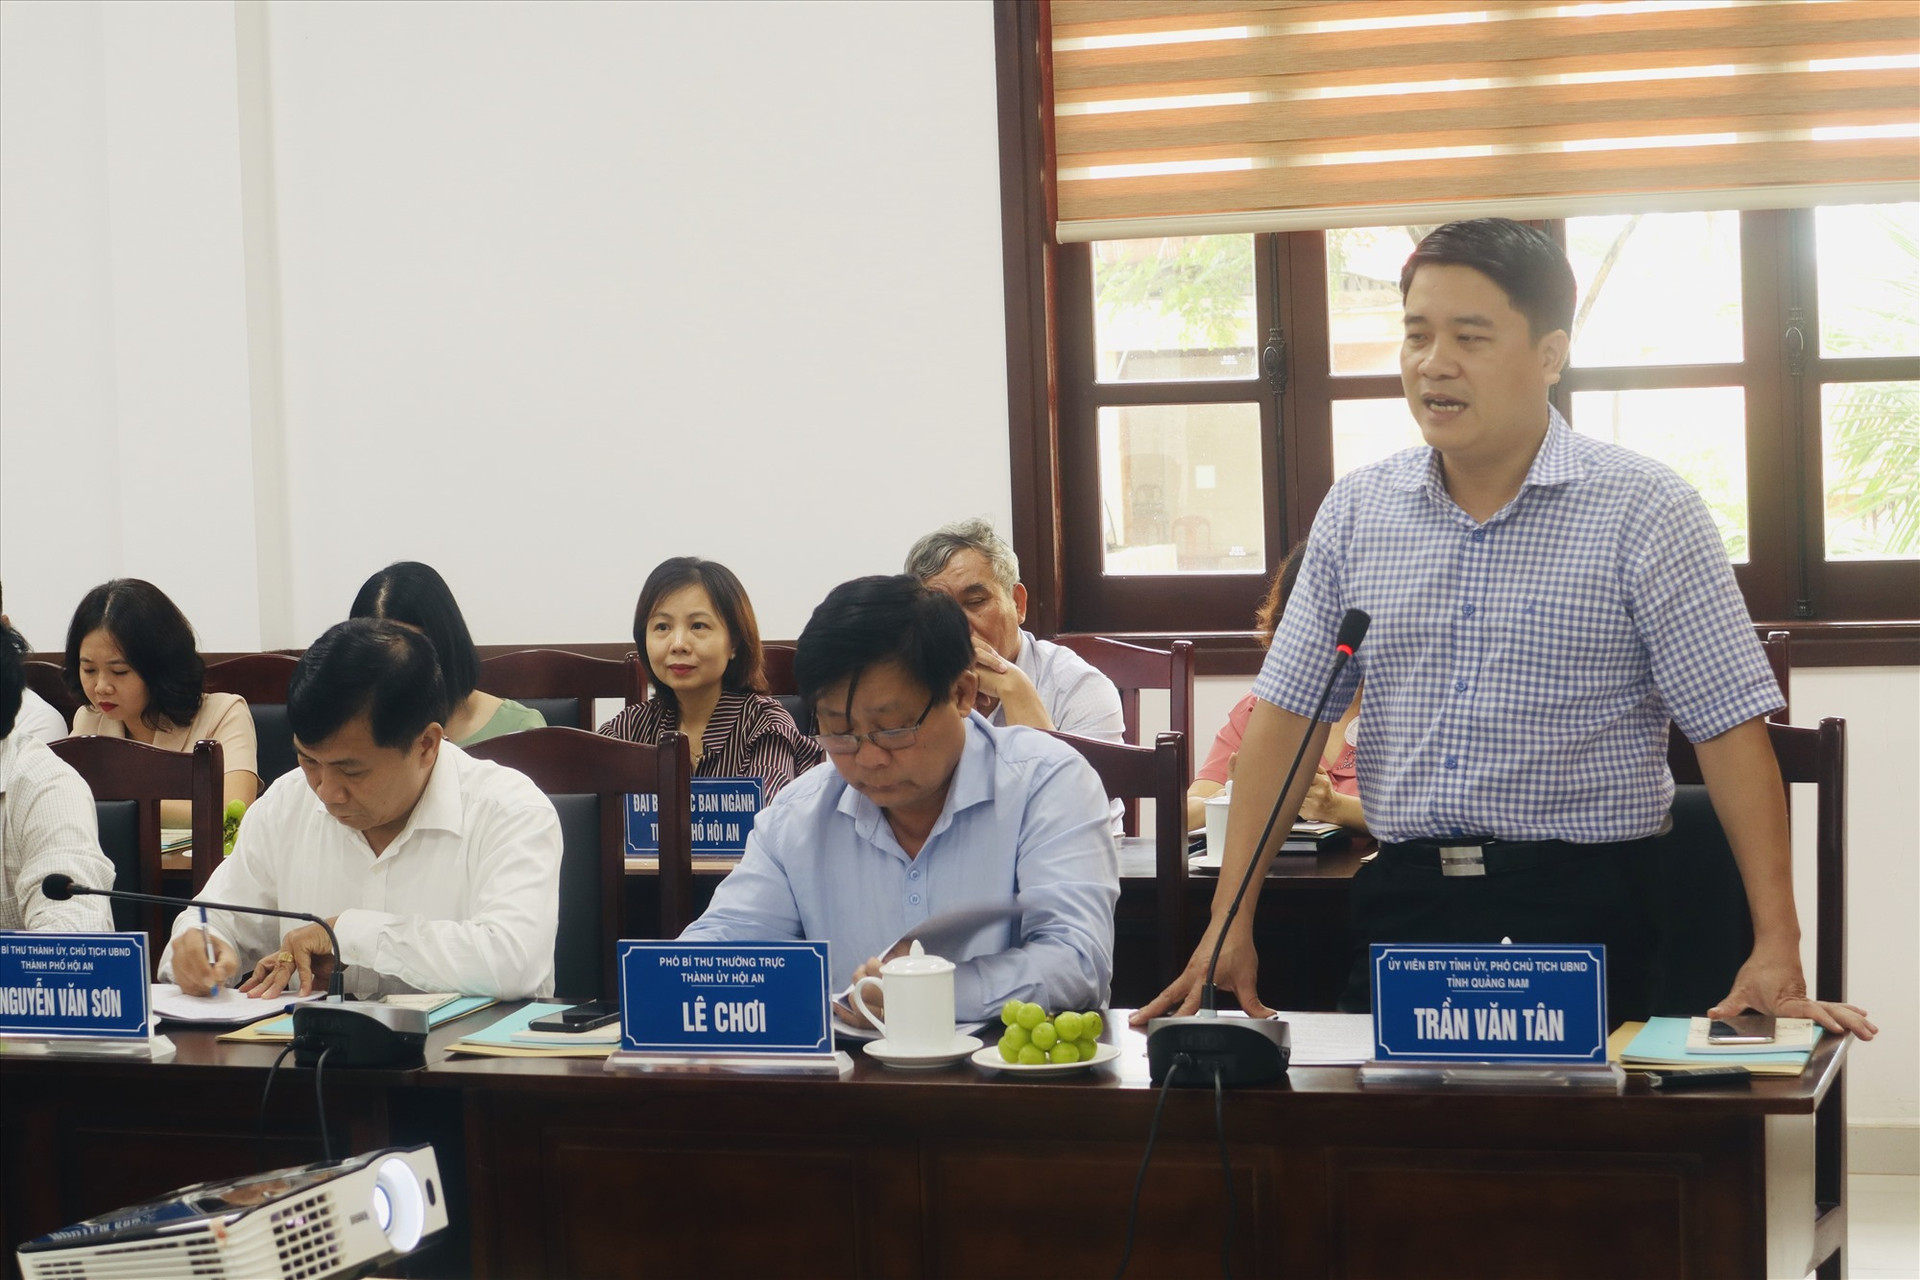 Phó Chủ tịch UBND tỉnh Trần Văn Tân phát biểu tại buổi làm việc. Ảnh: Q.T